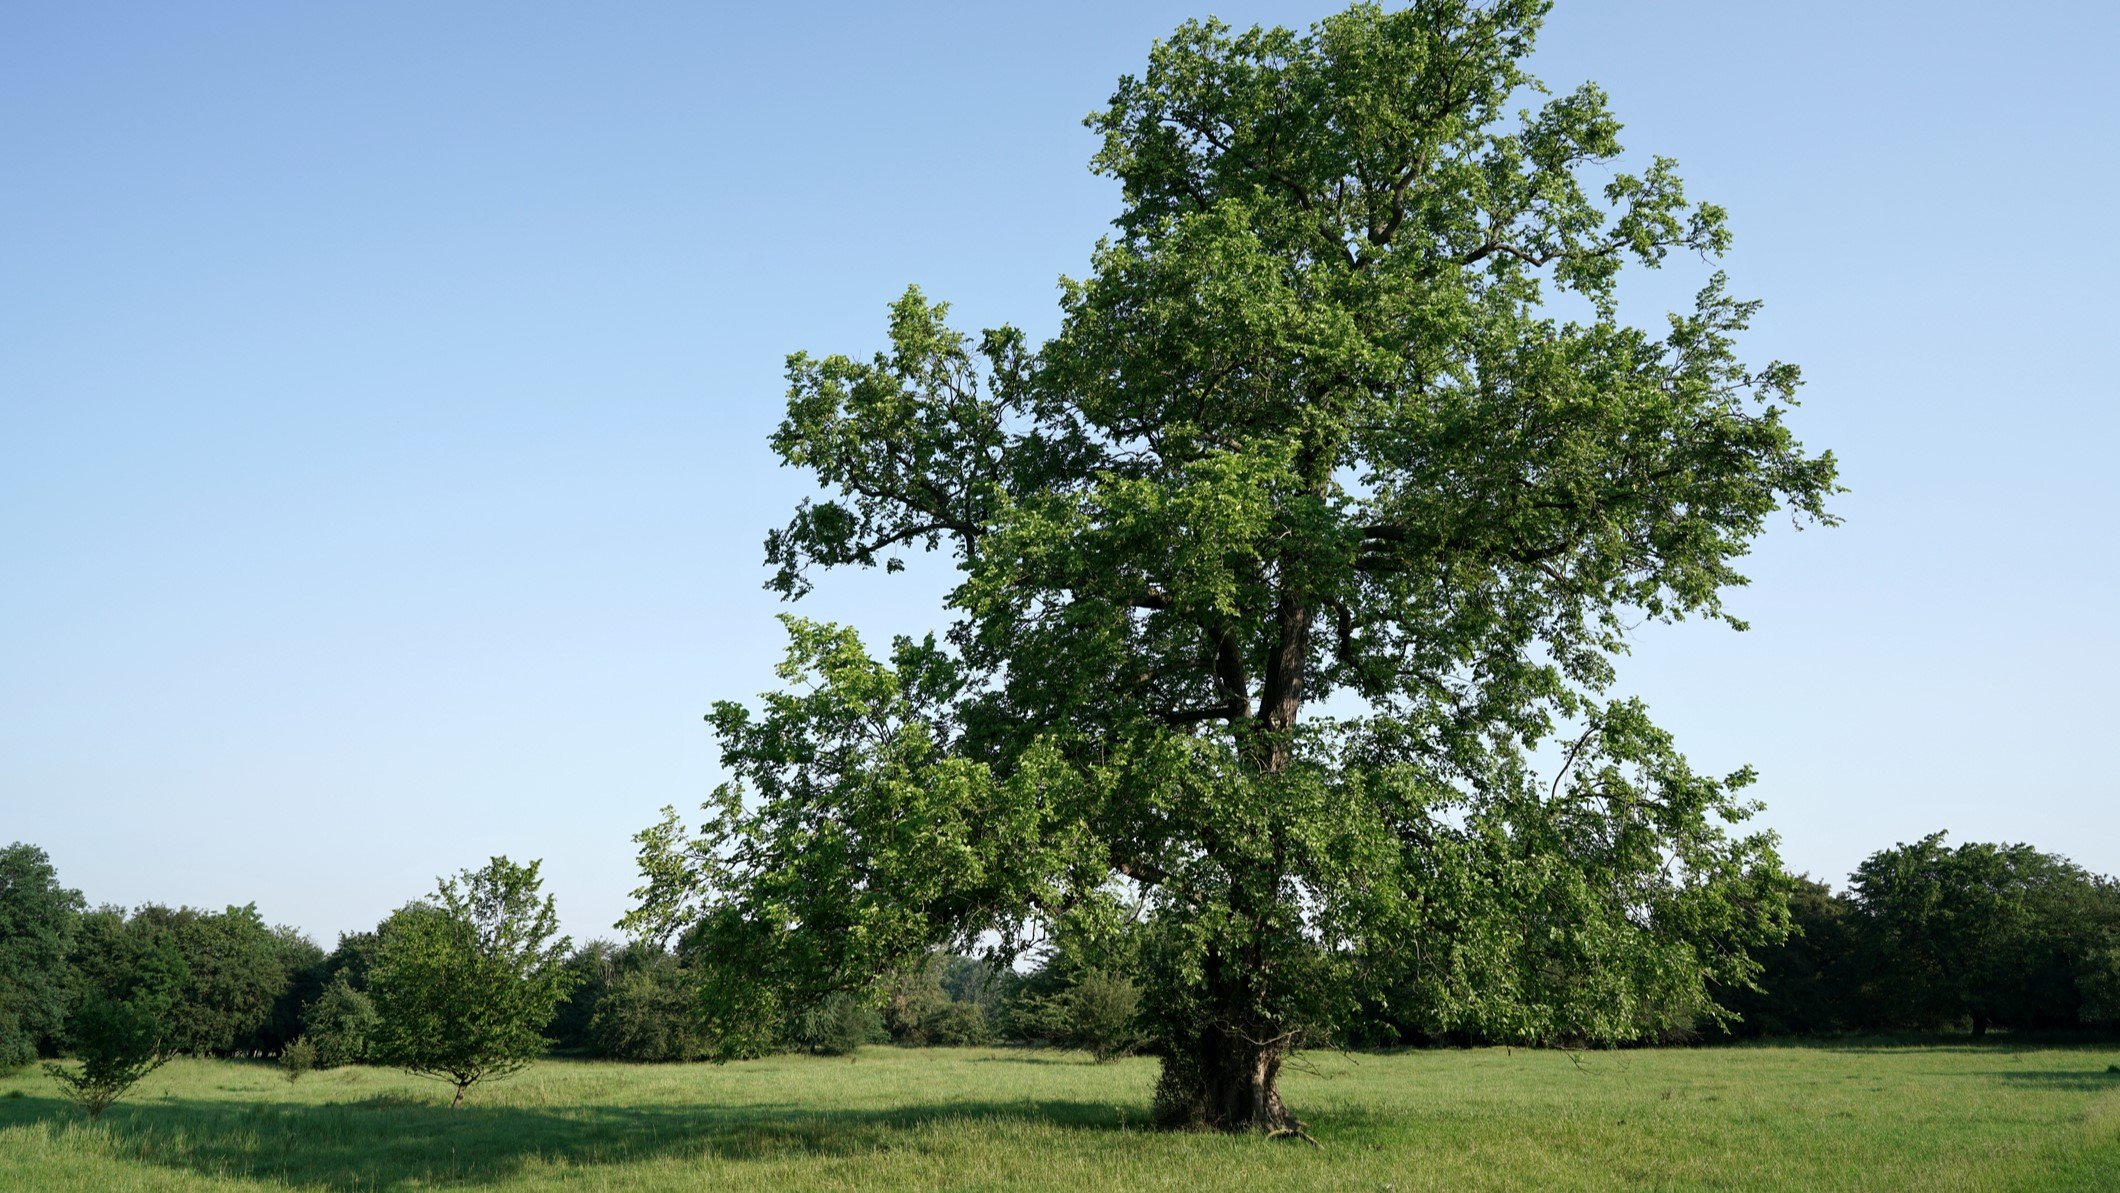 Elm tree